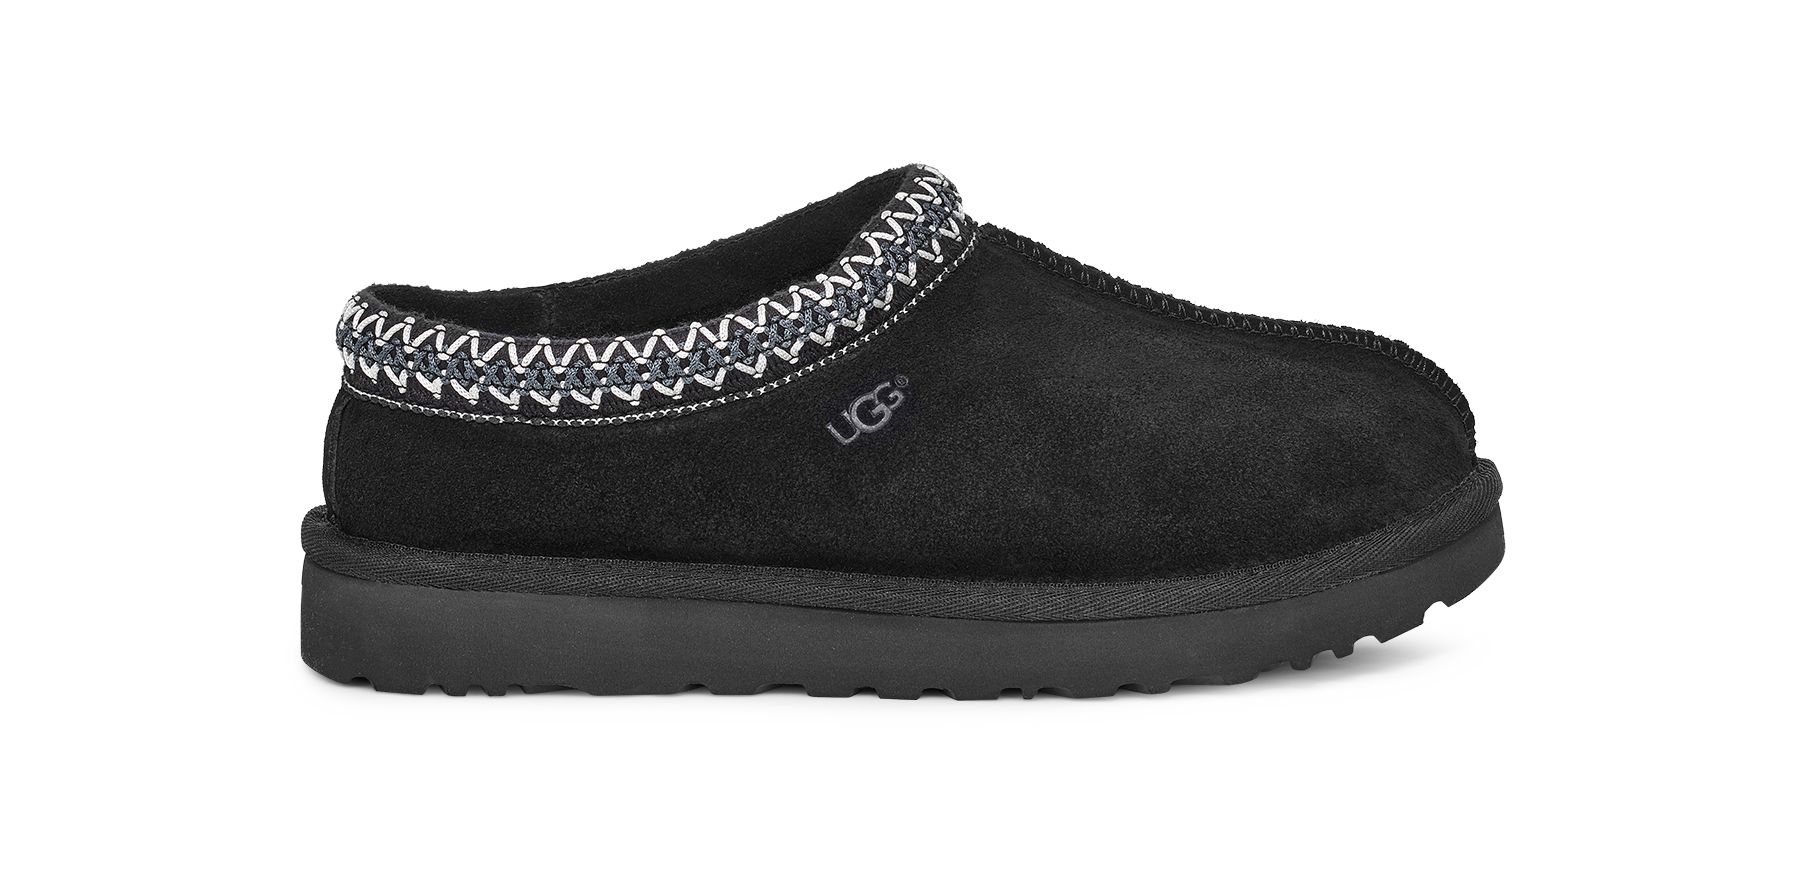 UGG® Tasman for Women | Sheepskin Slip-On Shoes at UGG.com | UGG (US)